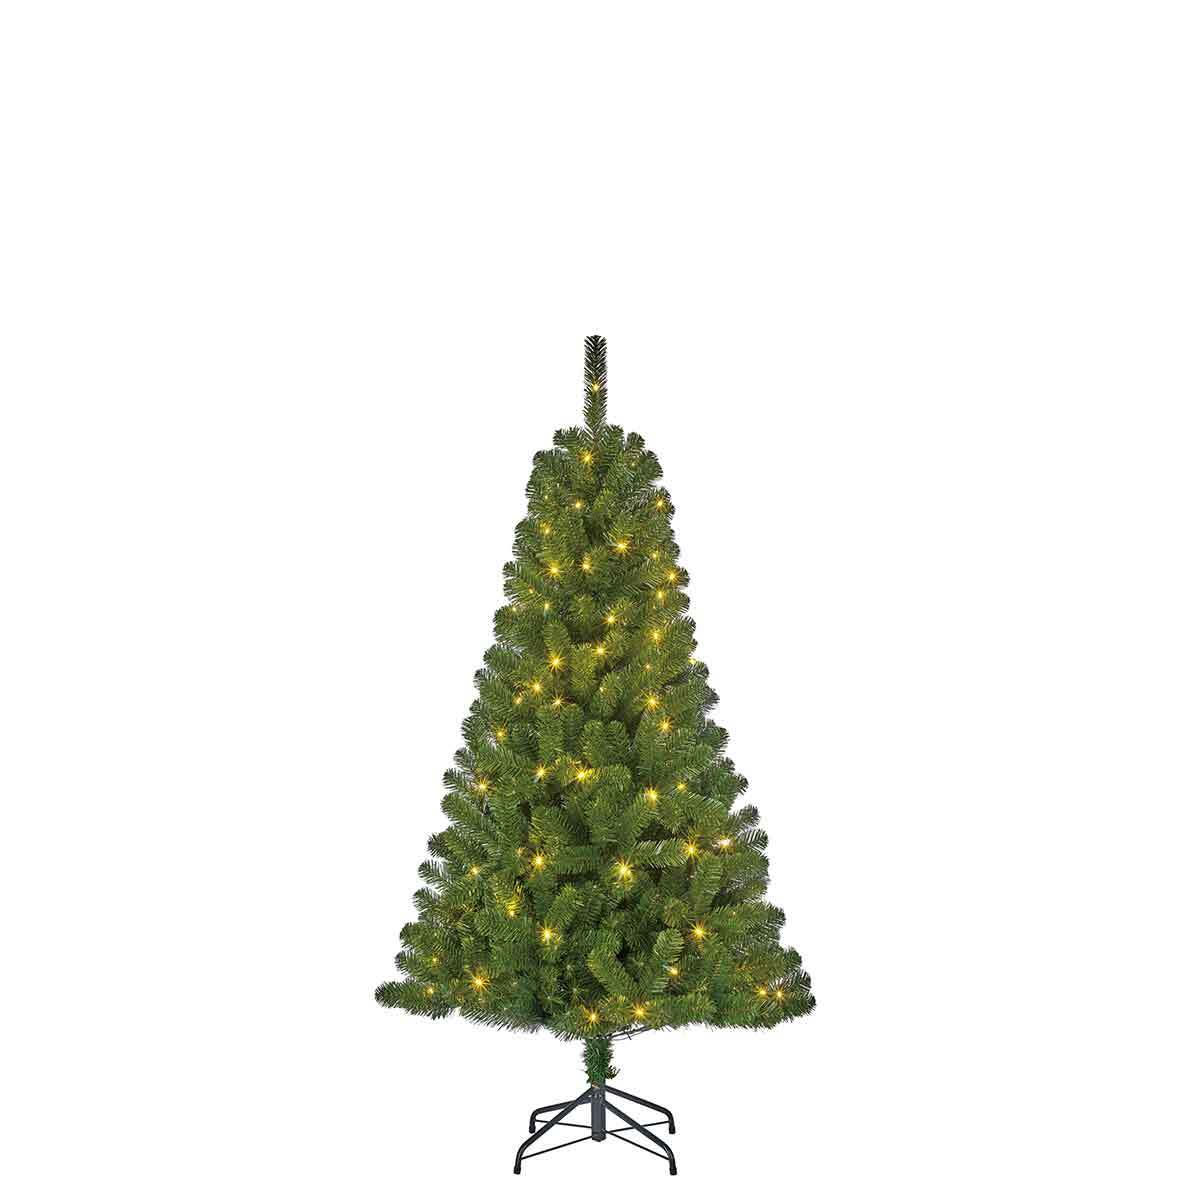 Blackbox Charlton kerstboom met 100 warmwitte led lampjes maat in cm: 155 x 91